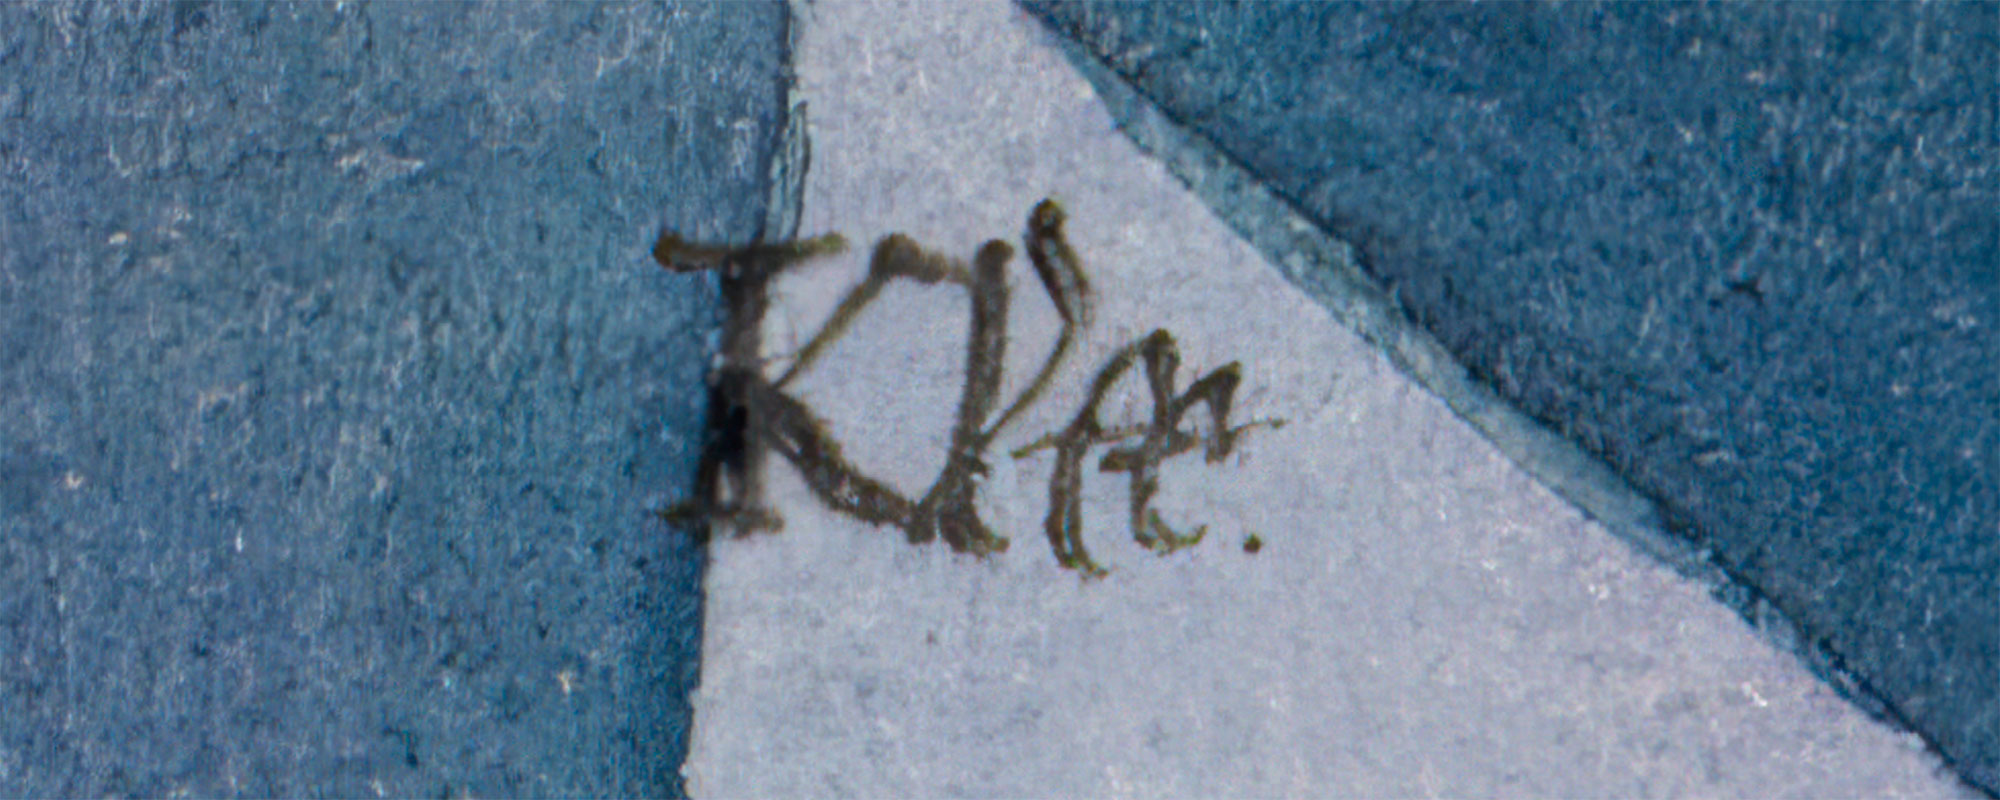 Sügisekuulutaja – Paul Klee maal